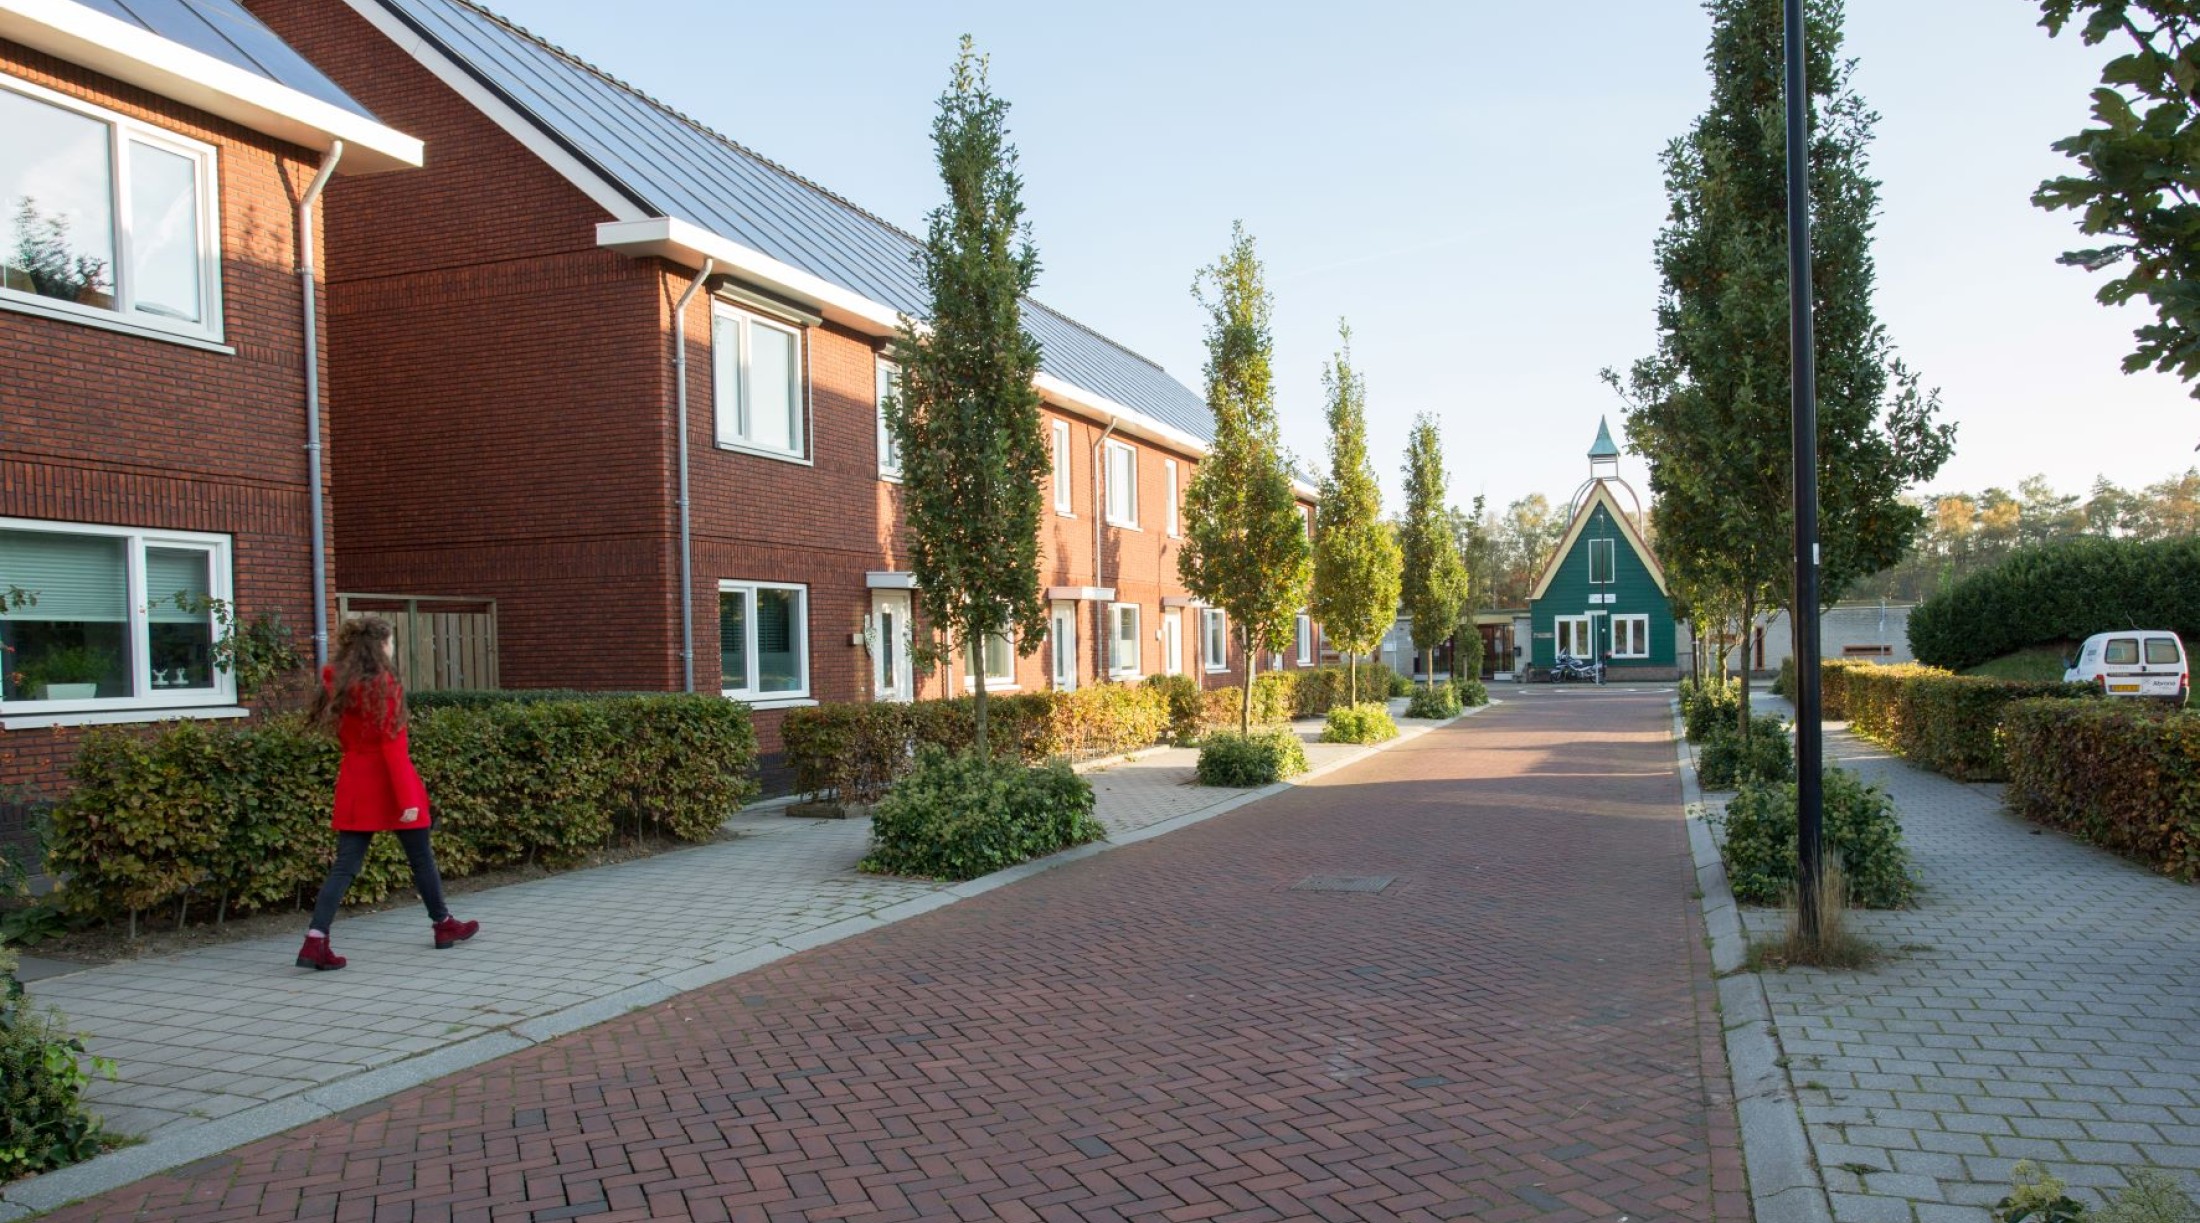 Woningen in de wijk Sterrenberg in Huis ter Heide (2019)